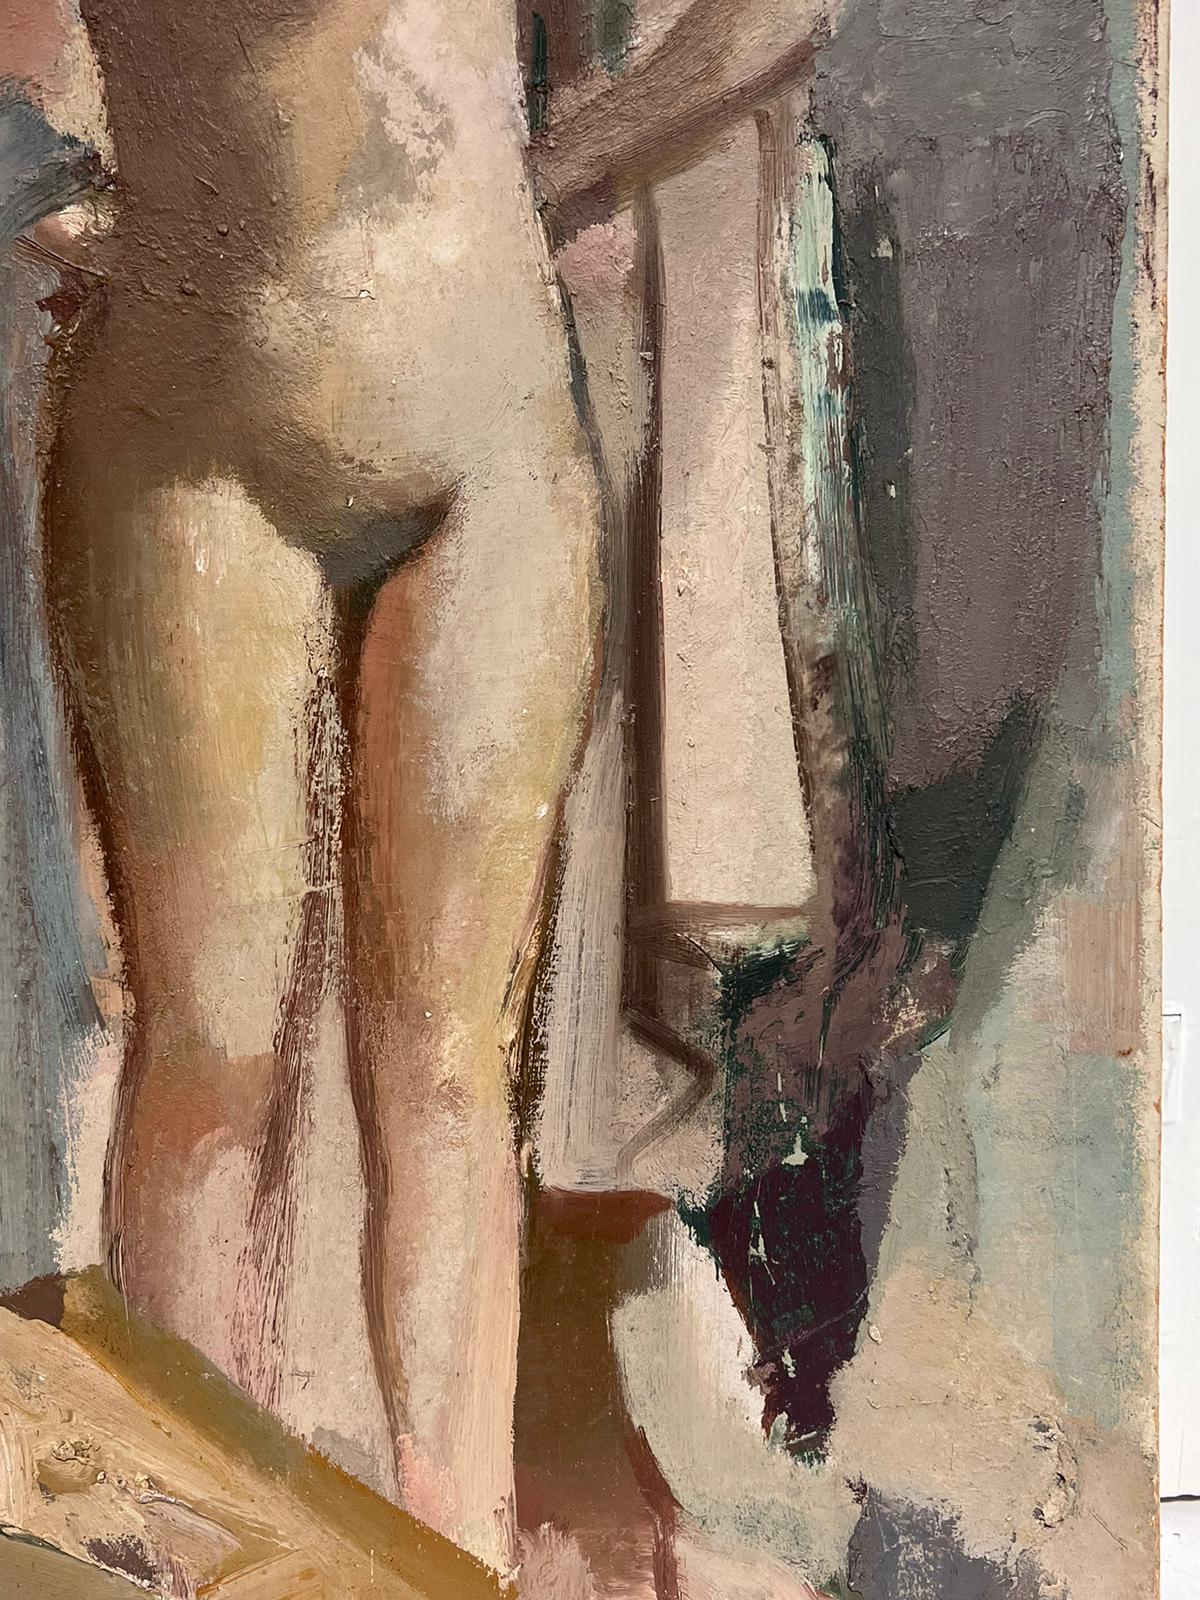 Das Studio Nude
Moderner britischer Künstler, 1960er Jahre
Label verso
Öl auf Karton, ungerahmt
Pappe: 21,5 x 12 Zoll
Provenienz: Privatsammlung, Großbritannien
Zustand: guter und gesunder Zustand